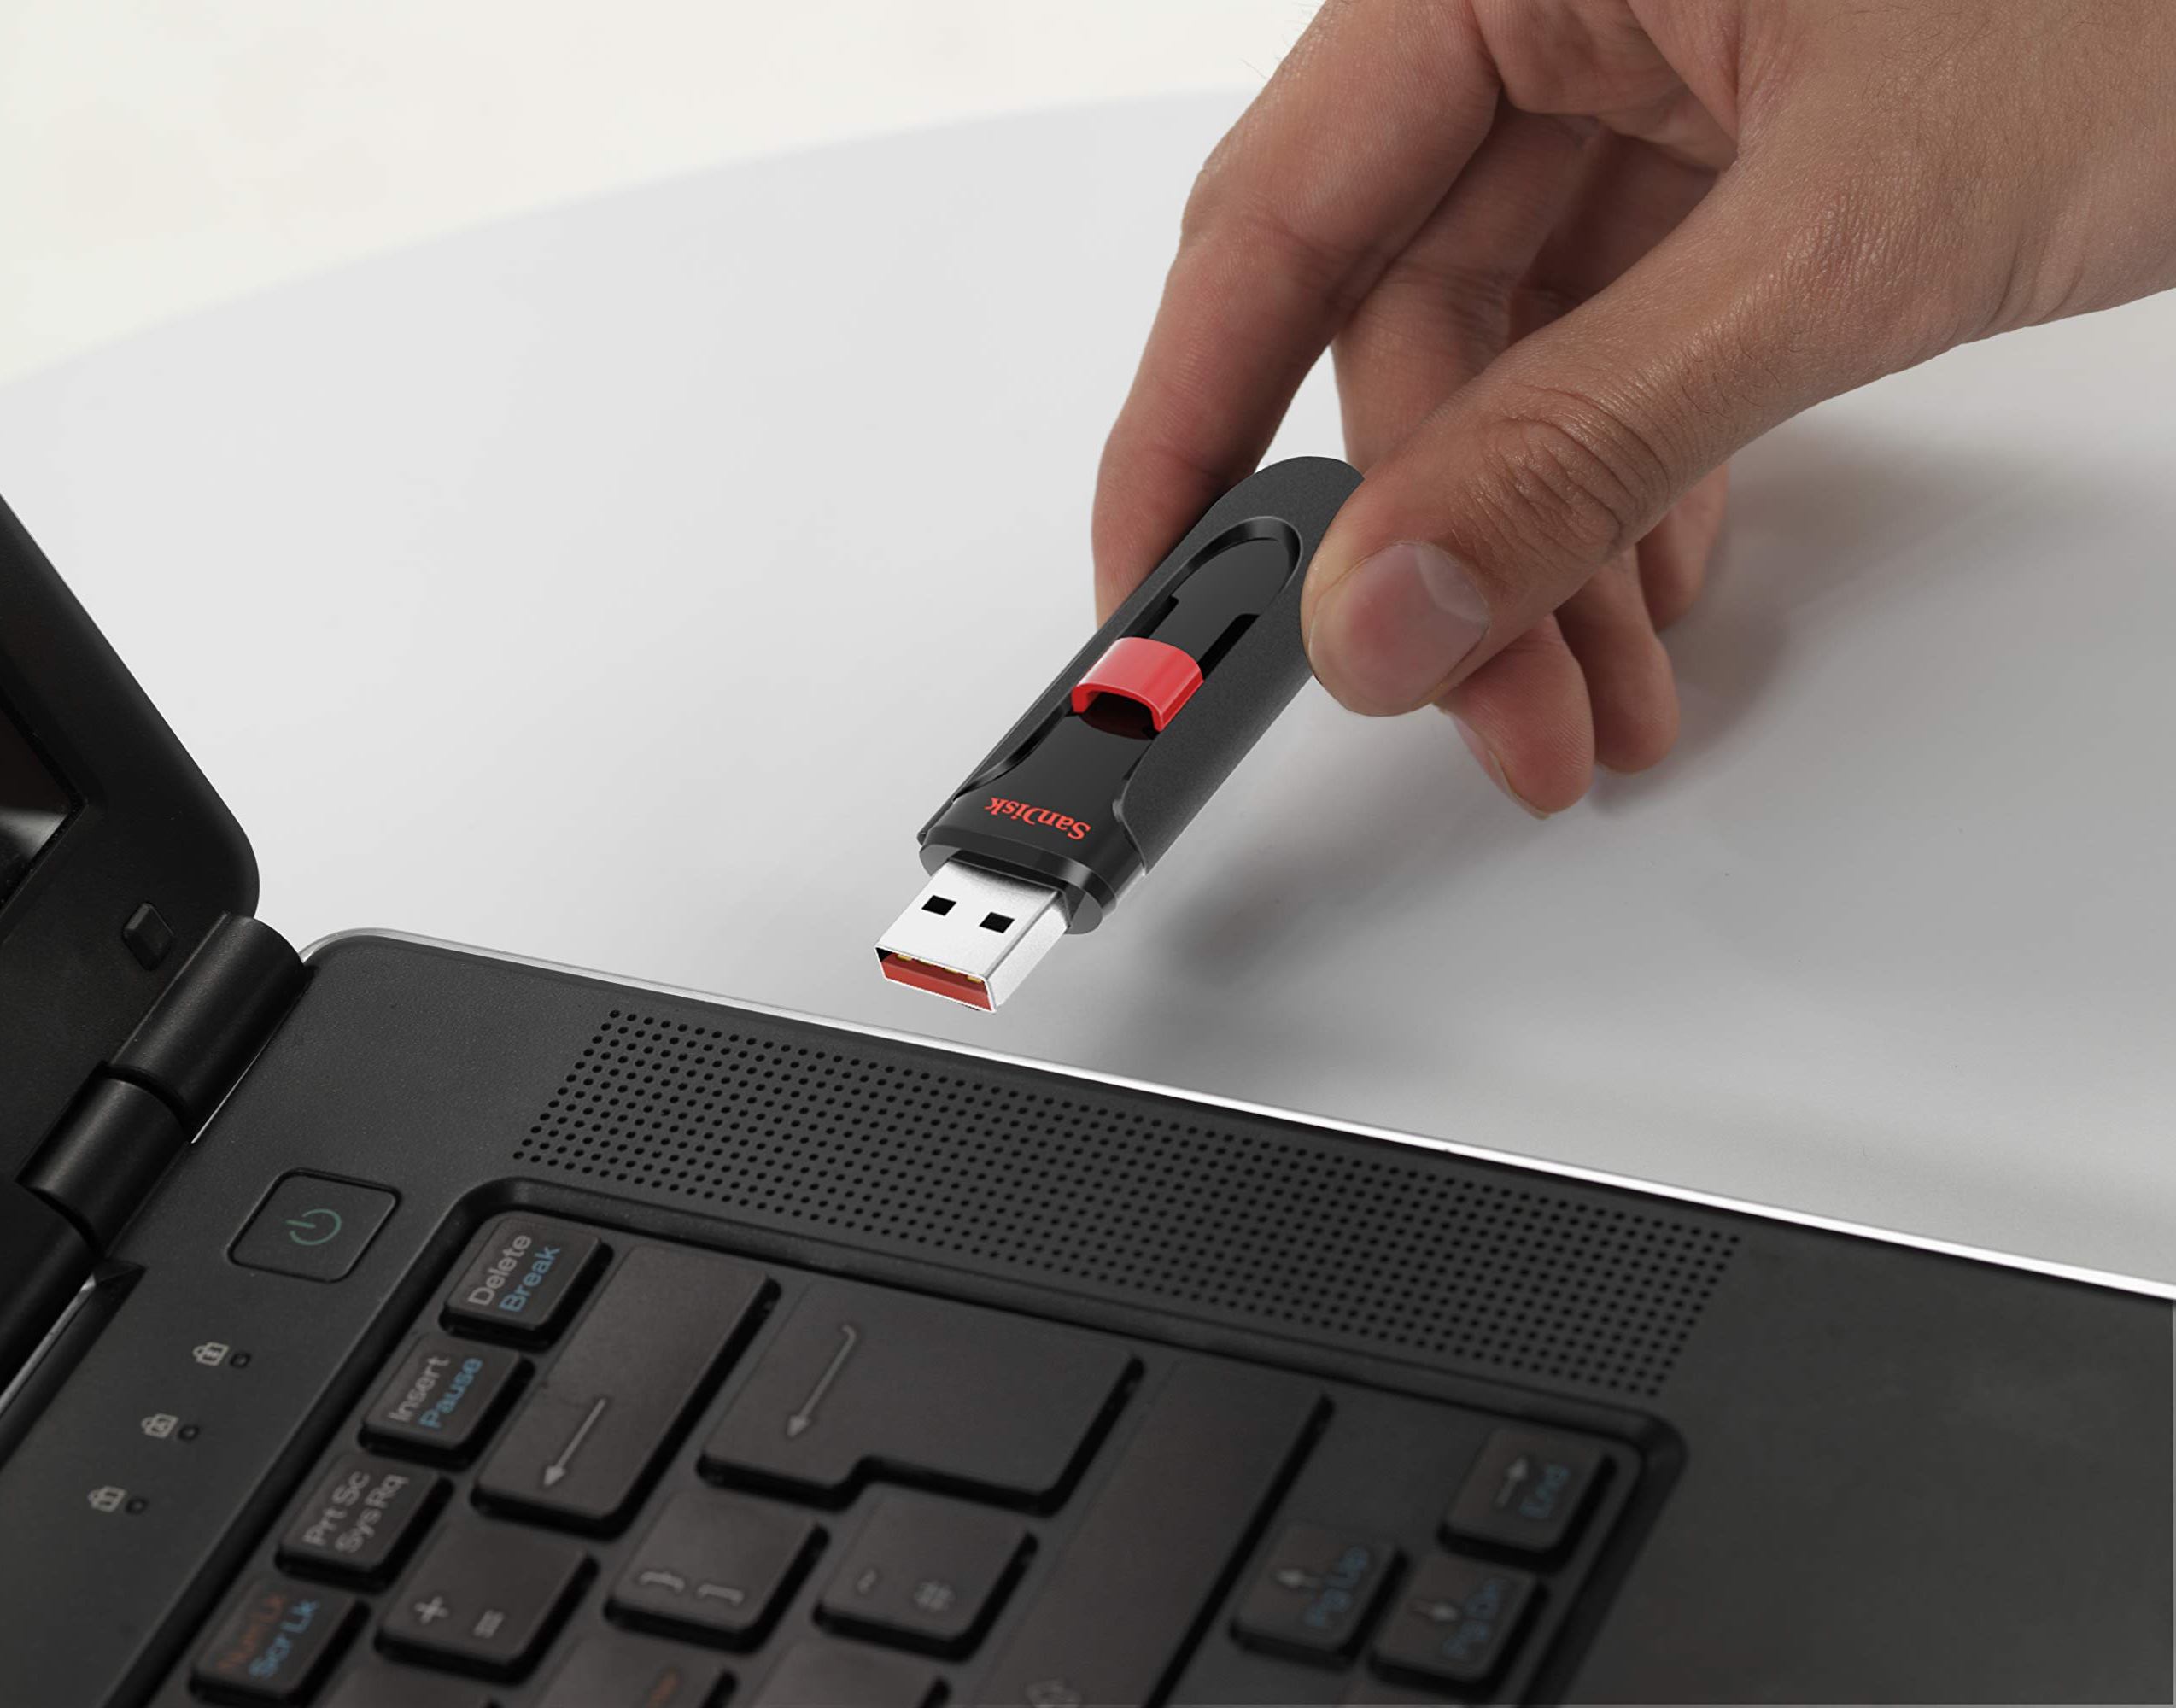 Stylový USB flashdisk SanDisk Cruzer Glide o kapacitě 128 GB nabízí snadný a bezpečný způsob sdílení, přesunu a zálohování vašich nejdůležitějších souborů.